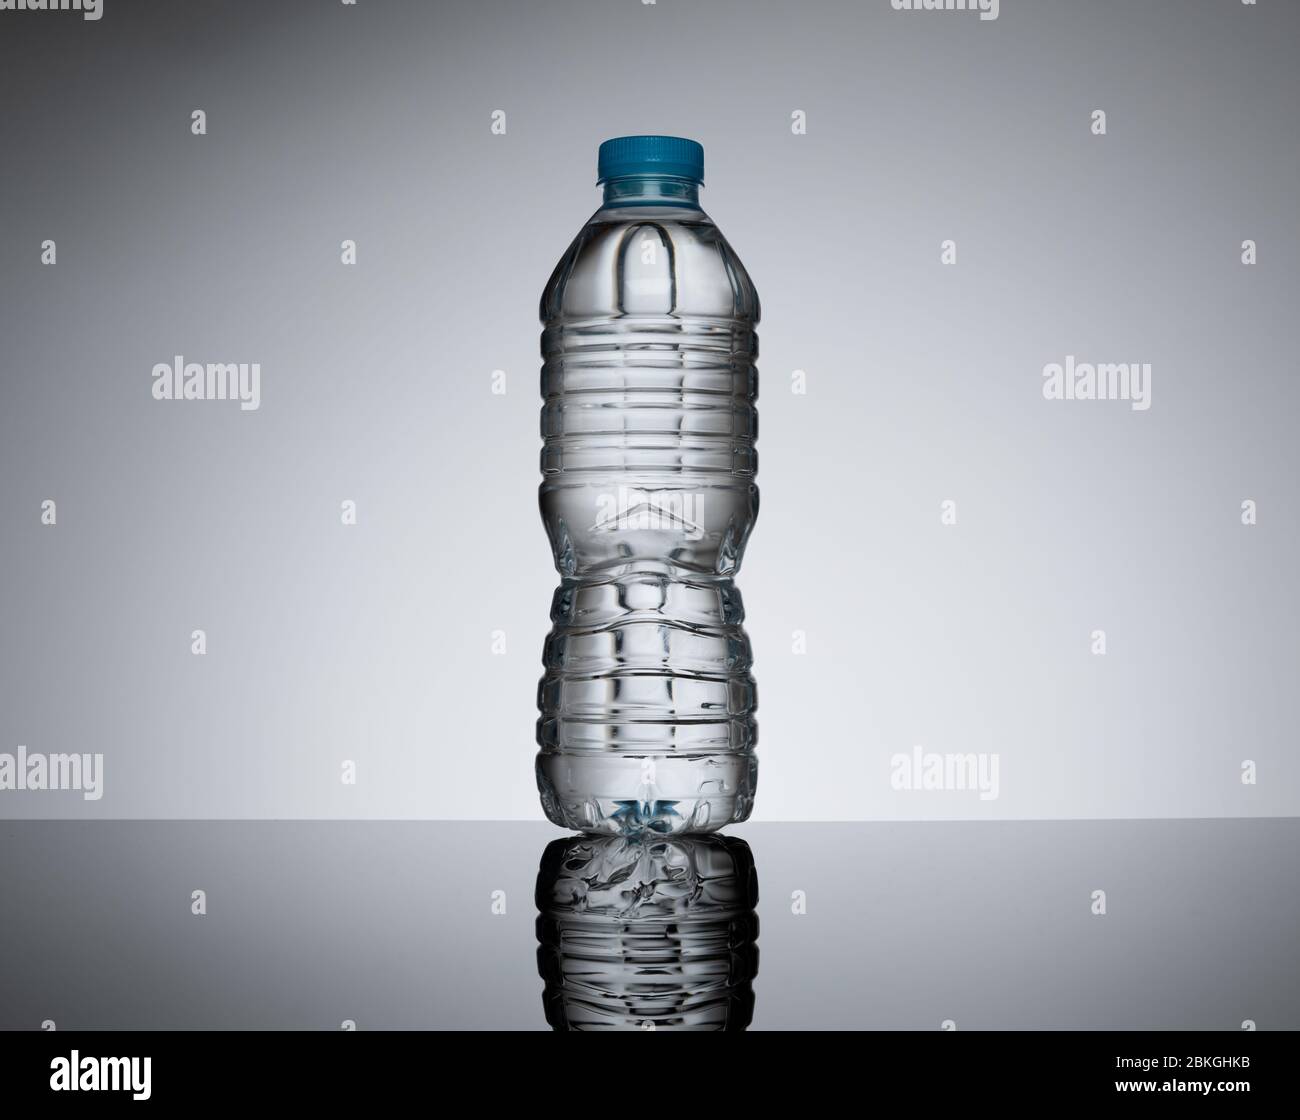 Eine 0,5 l/50 cl klare Kunststoffflasche ohne Etiketten vor einem schlichten neutralen Hintergrund. Drei Flaschen erhältlich - Bild-ID 2BKGHNB Stockfoto